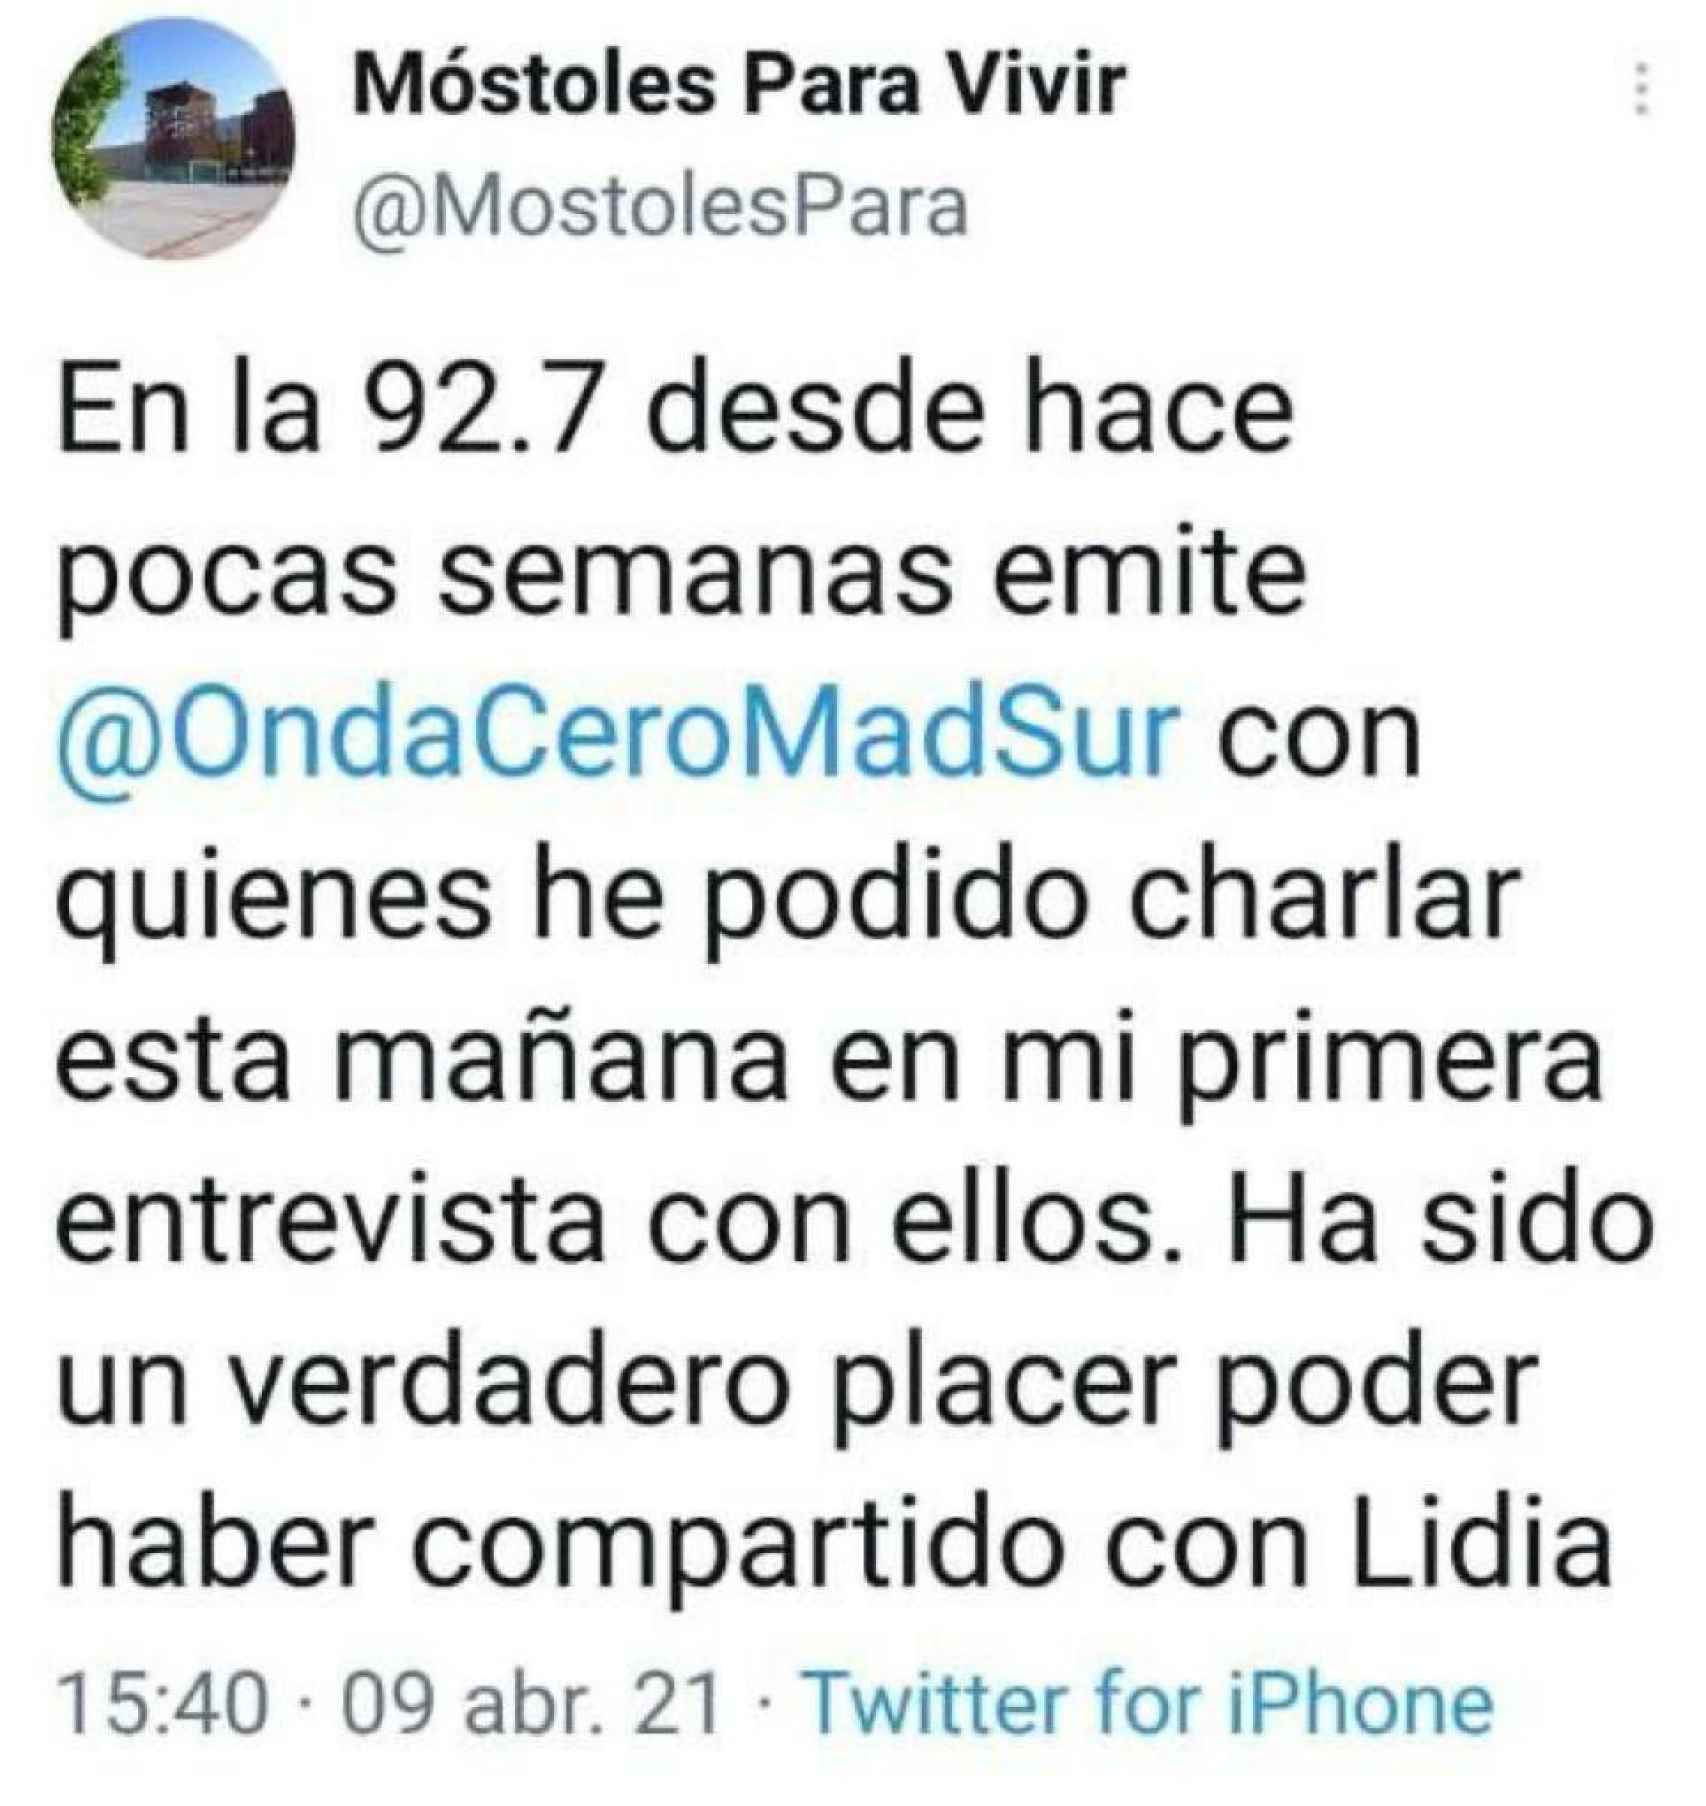 Tweet de la cuenta Móstoles para Vivir en el que se hace referencia a la entrevista que tuvo Noelia Posse.